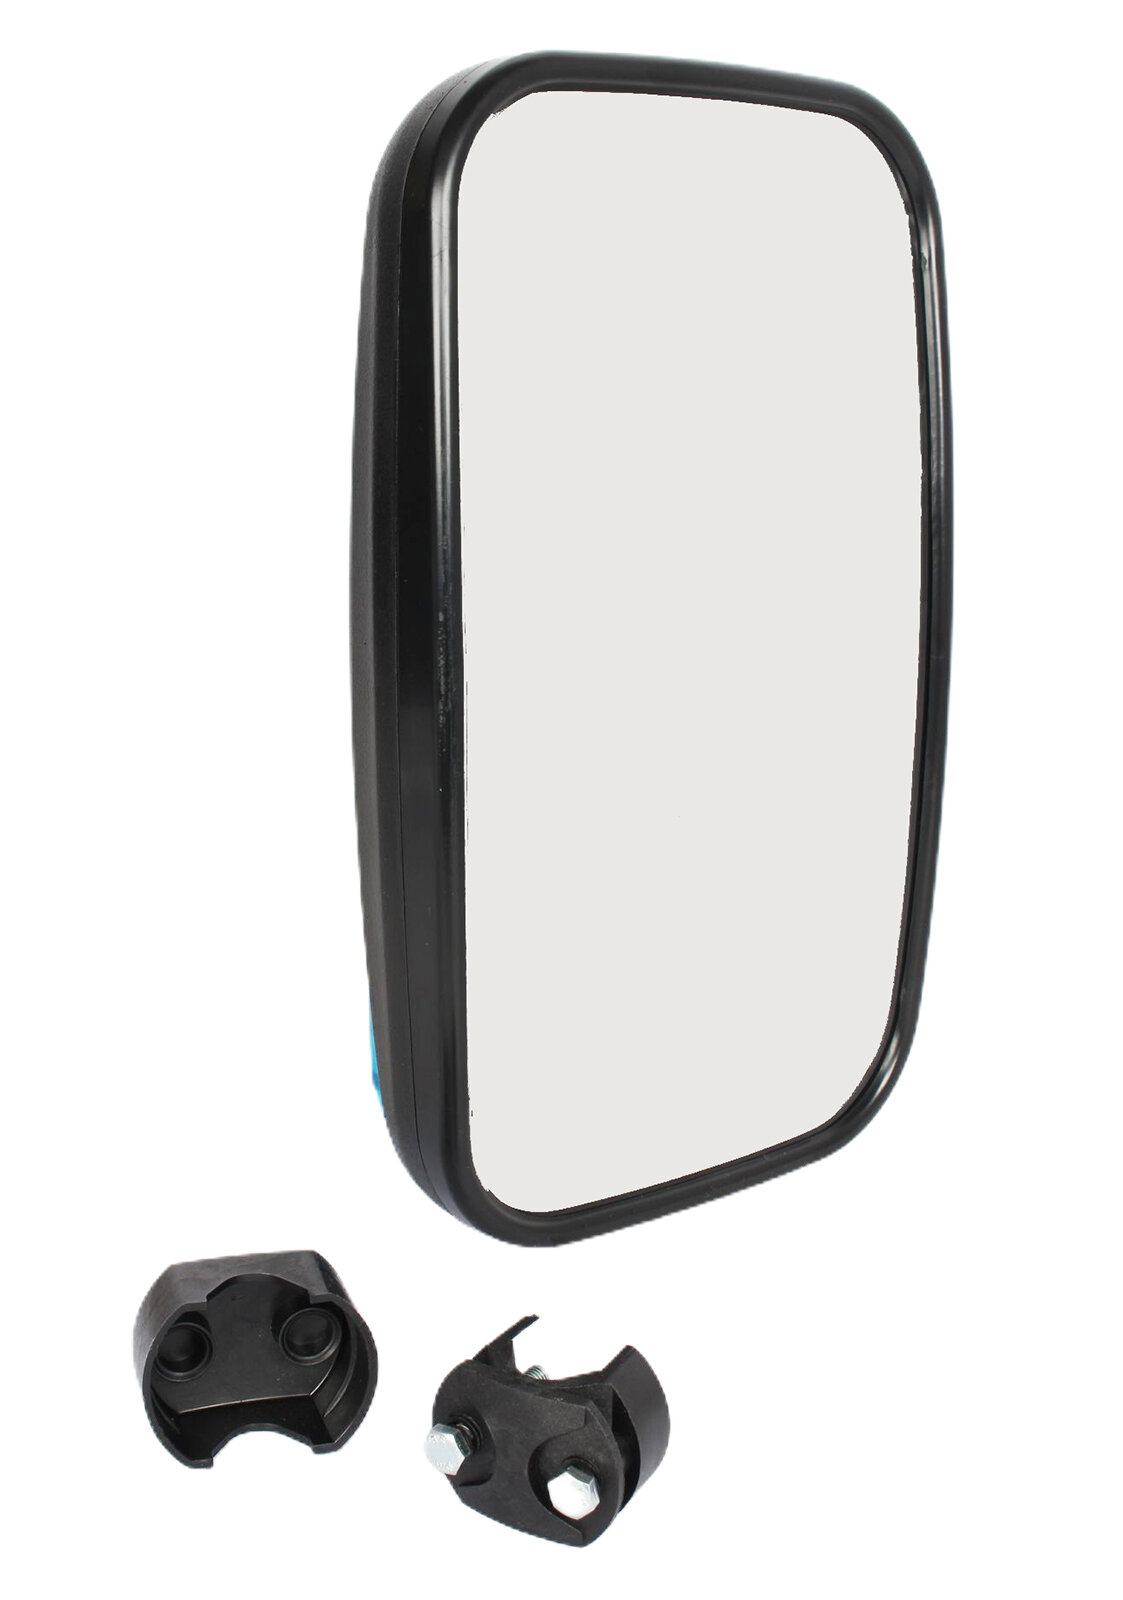 Зеркало боковое КАМАЗ, МАЗ основное сферическое с подогревом 24V 320х180 ОАО маз-белог